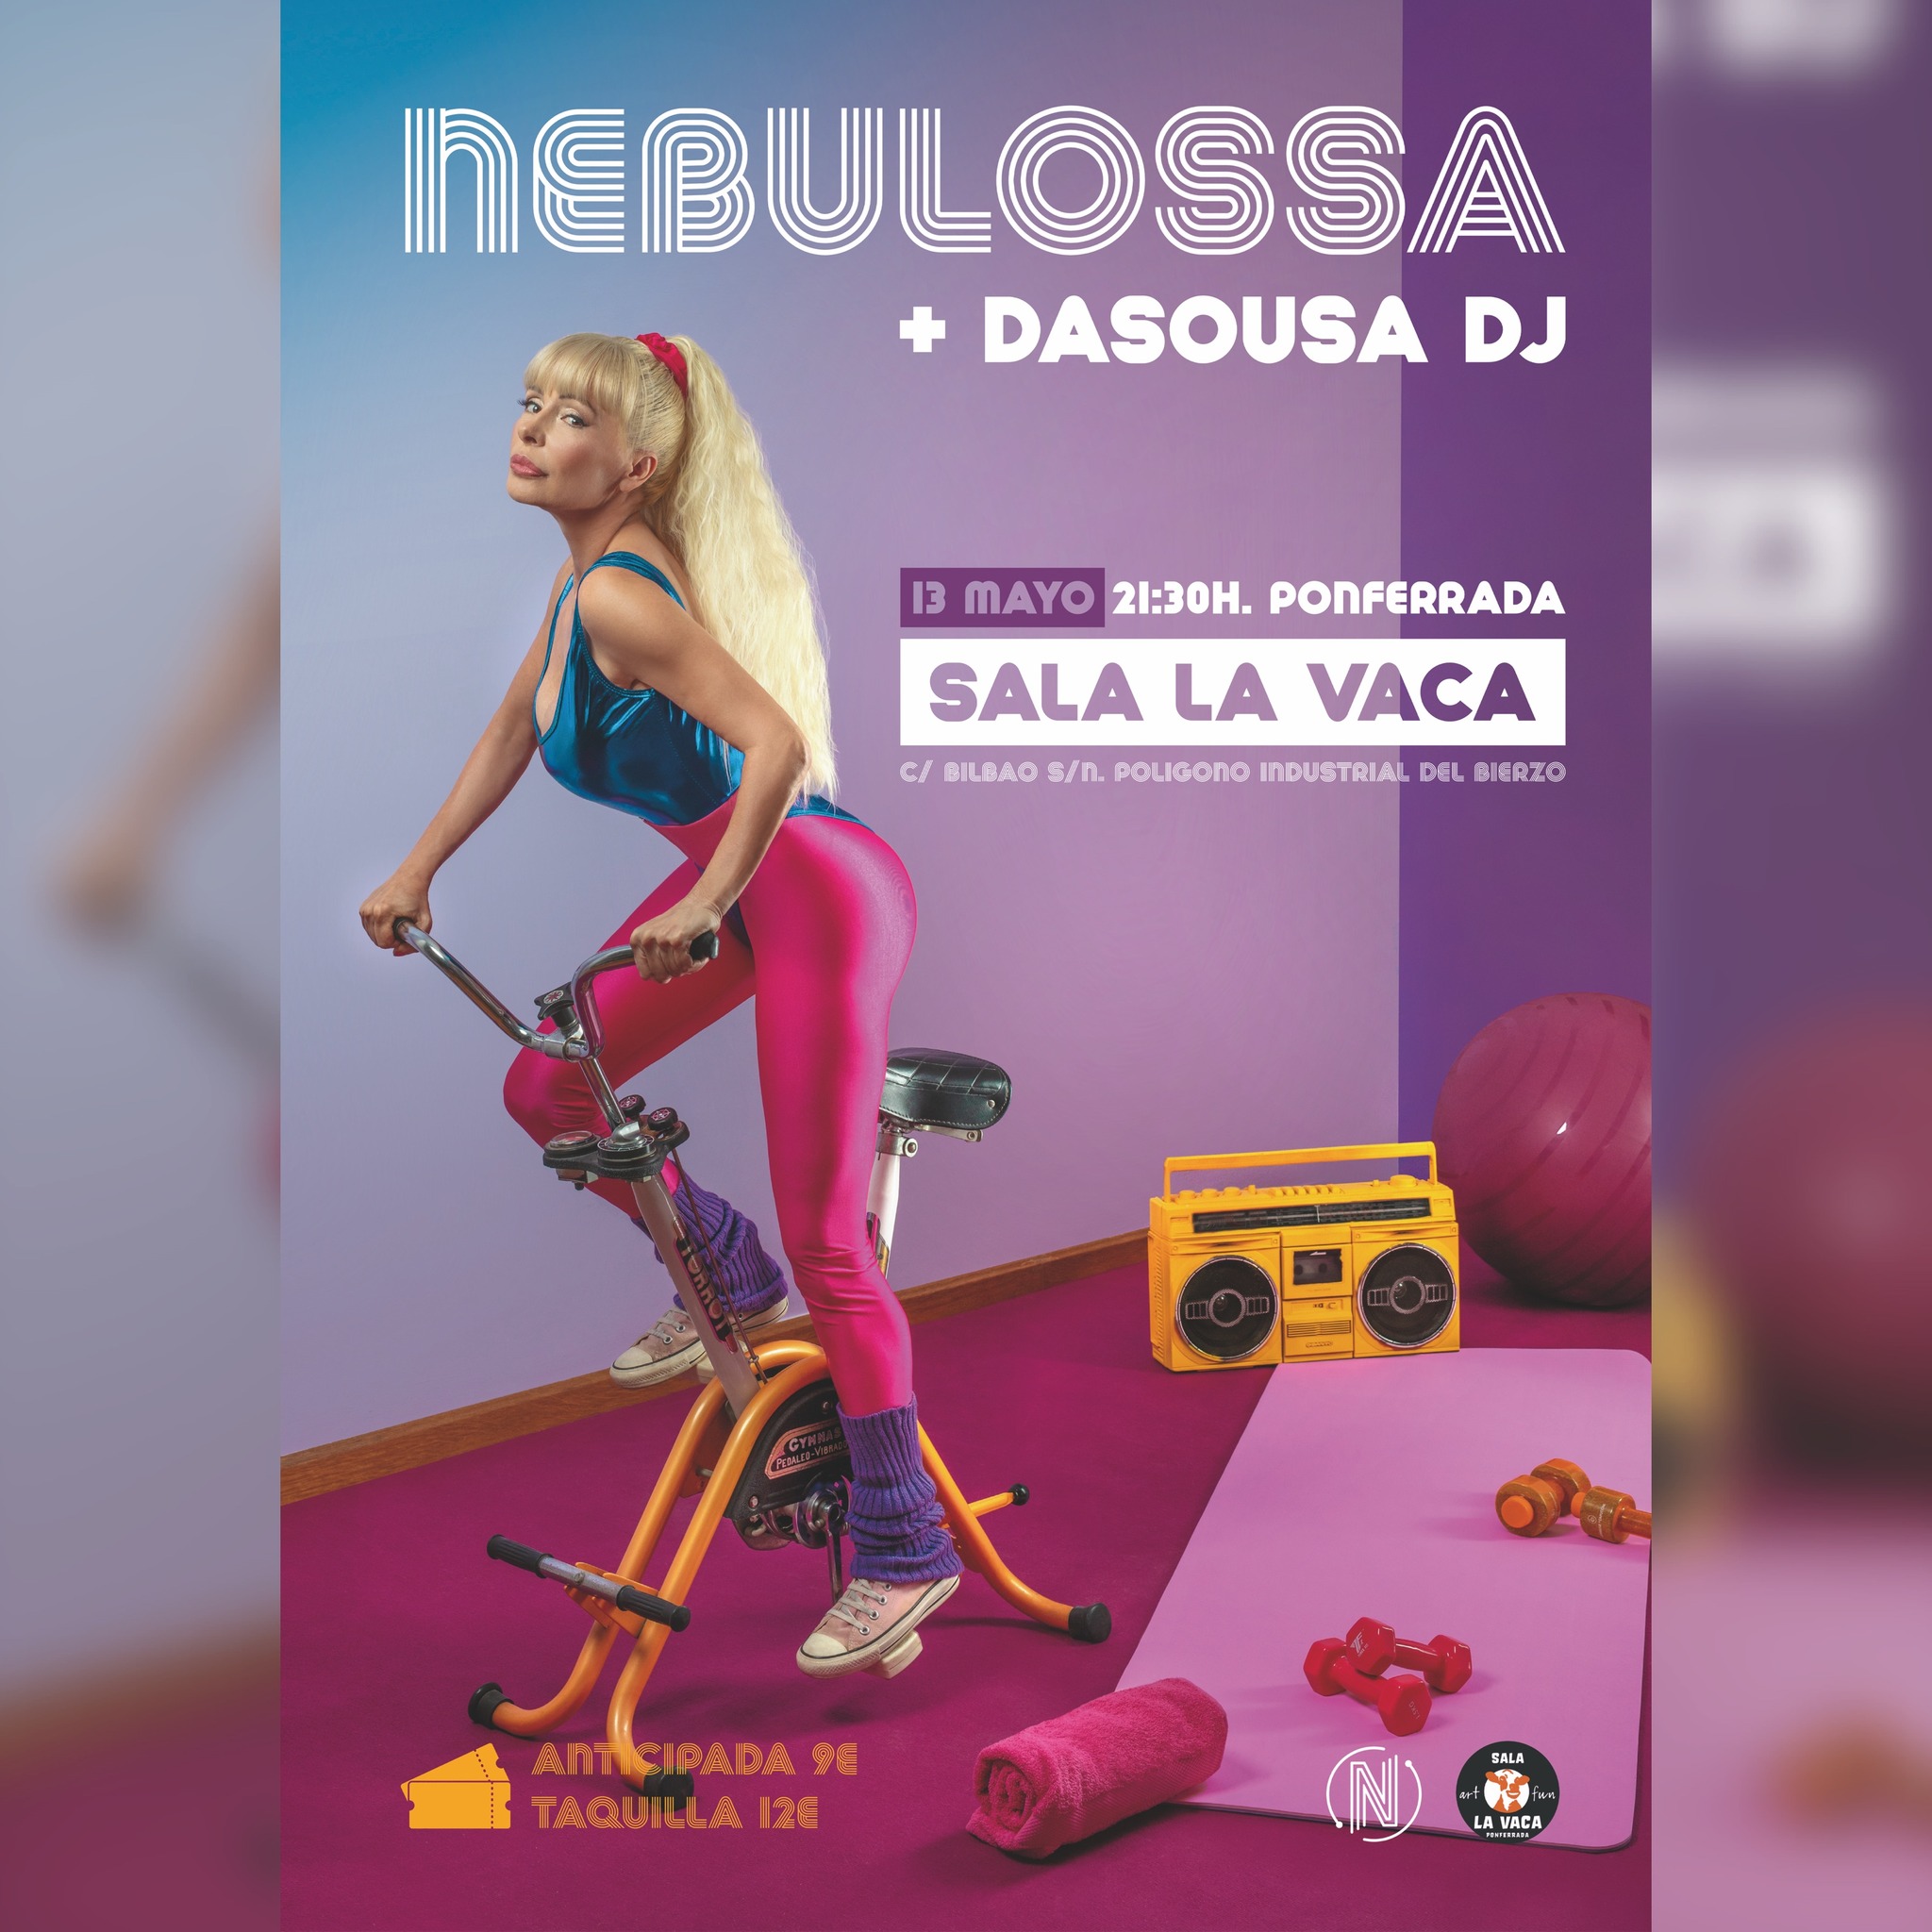 Nebulossa recuerda amargamente como el año pasado nadie acudió a su concierto en Ponferrada 3